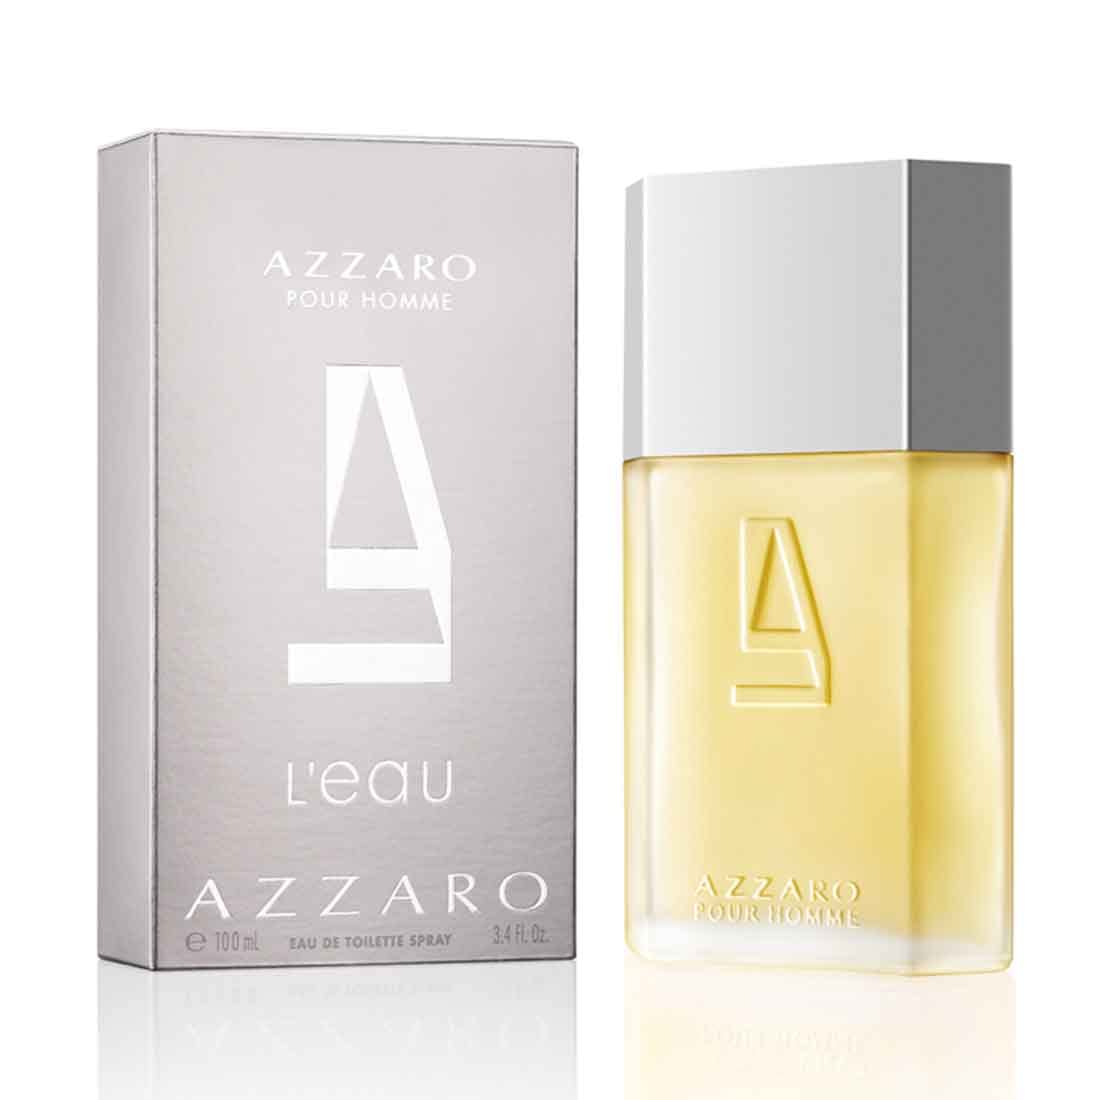 Azzaro Pour Homme L'eau Eau de Toilette spray for Men